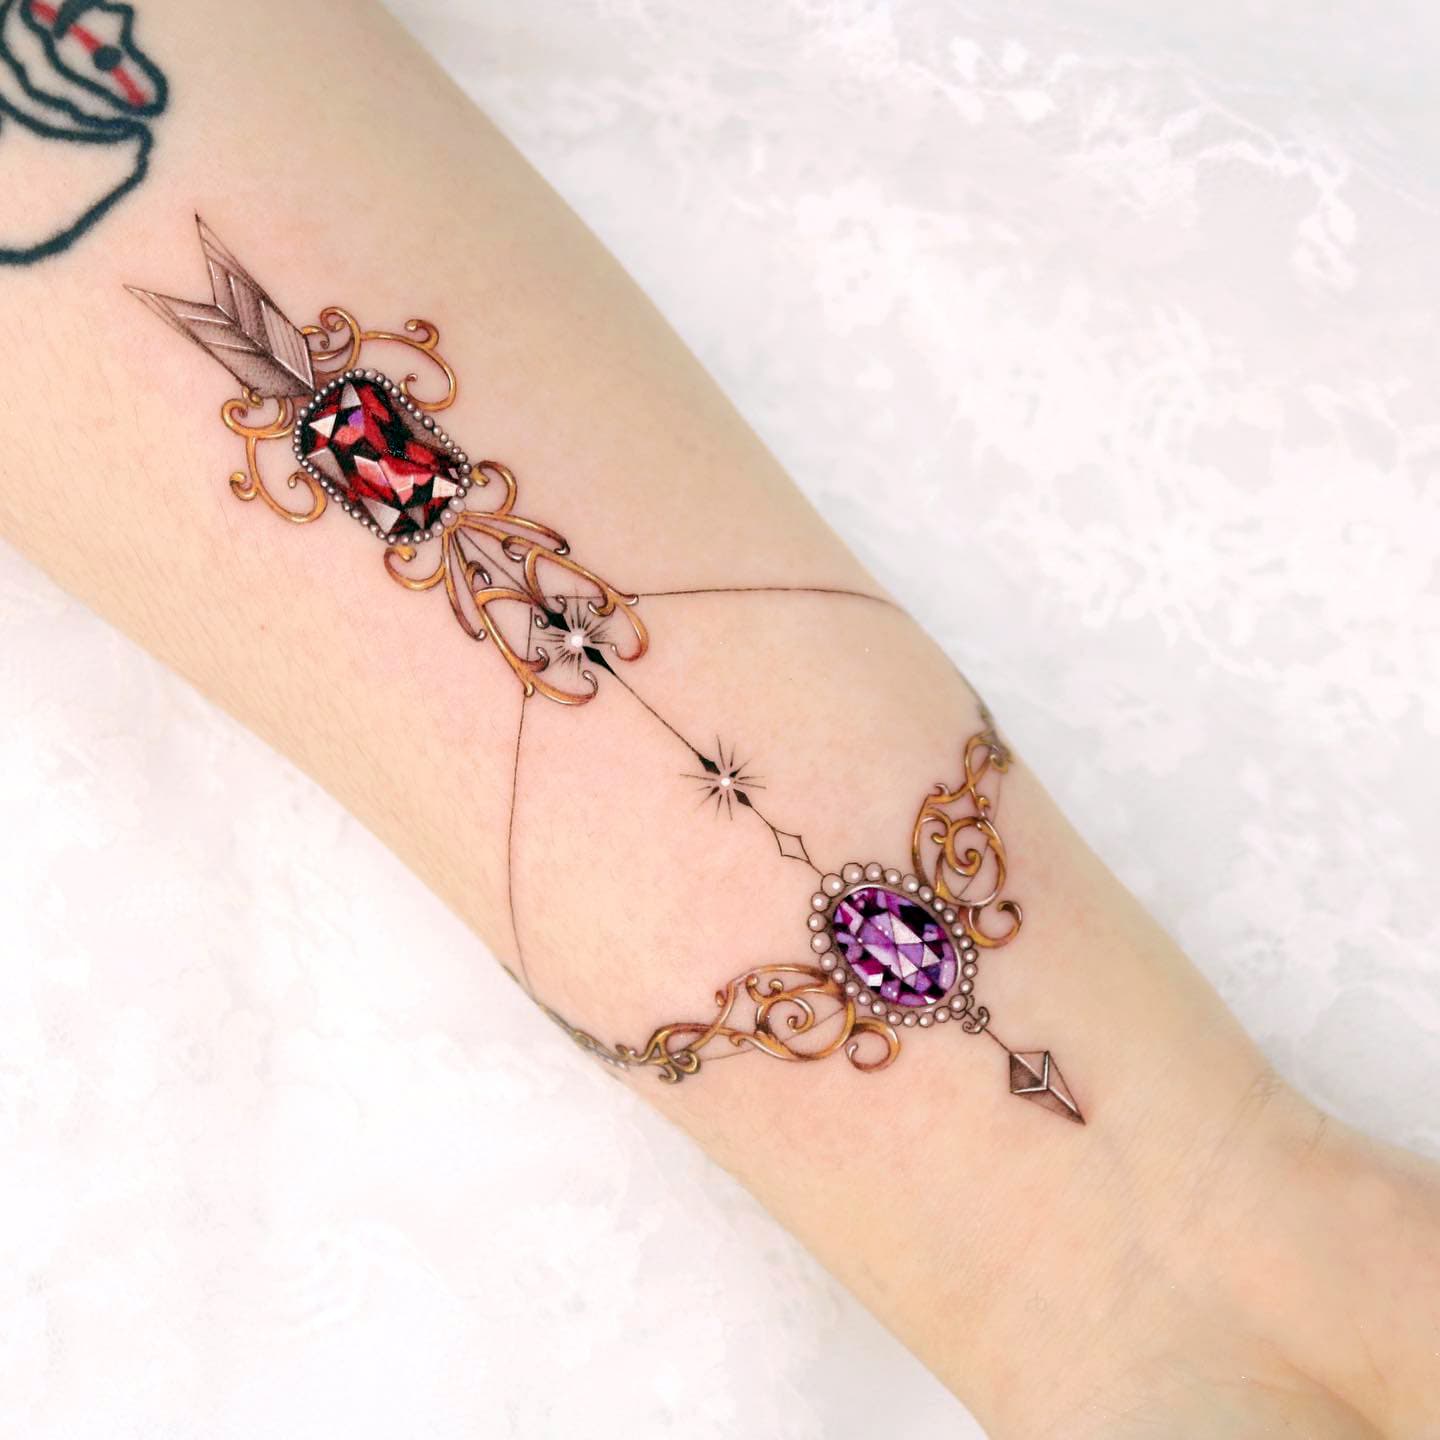 Tatuaje de arco y flecha